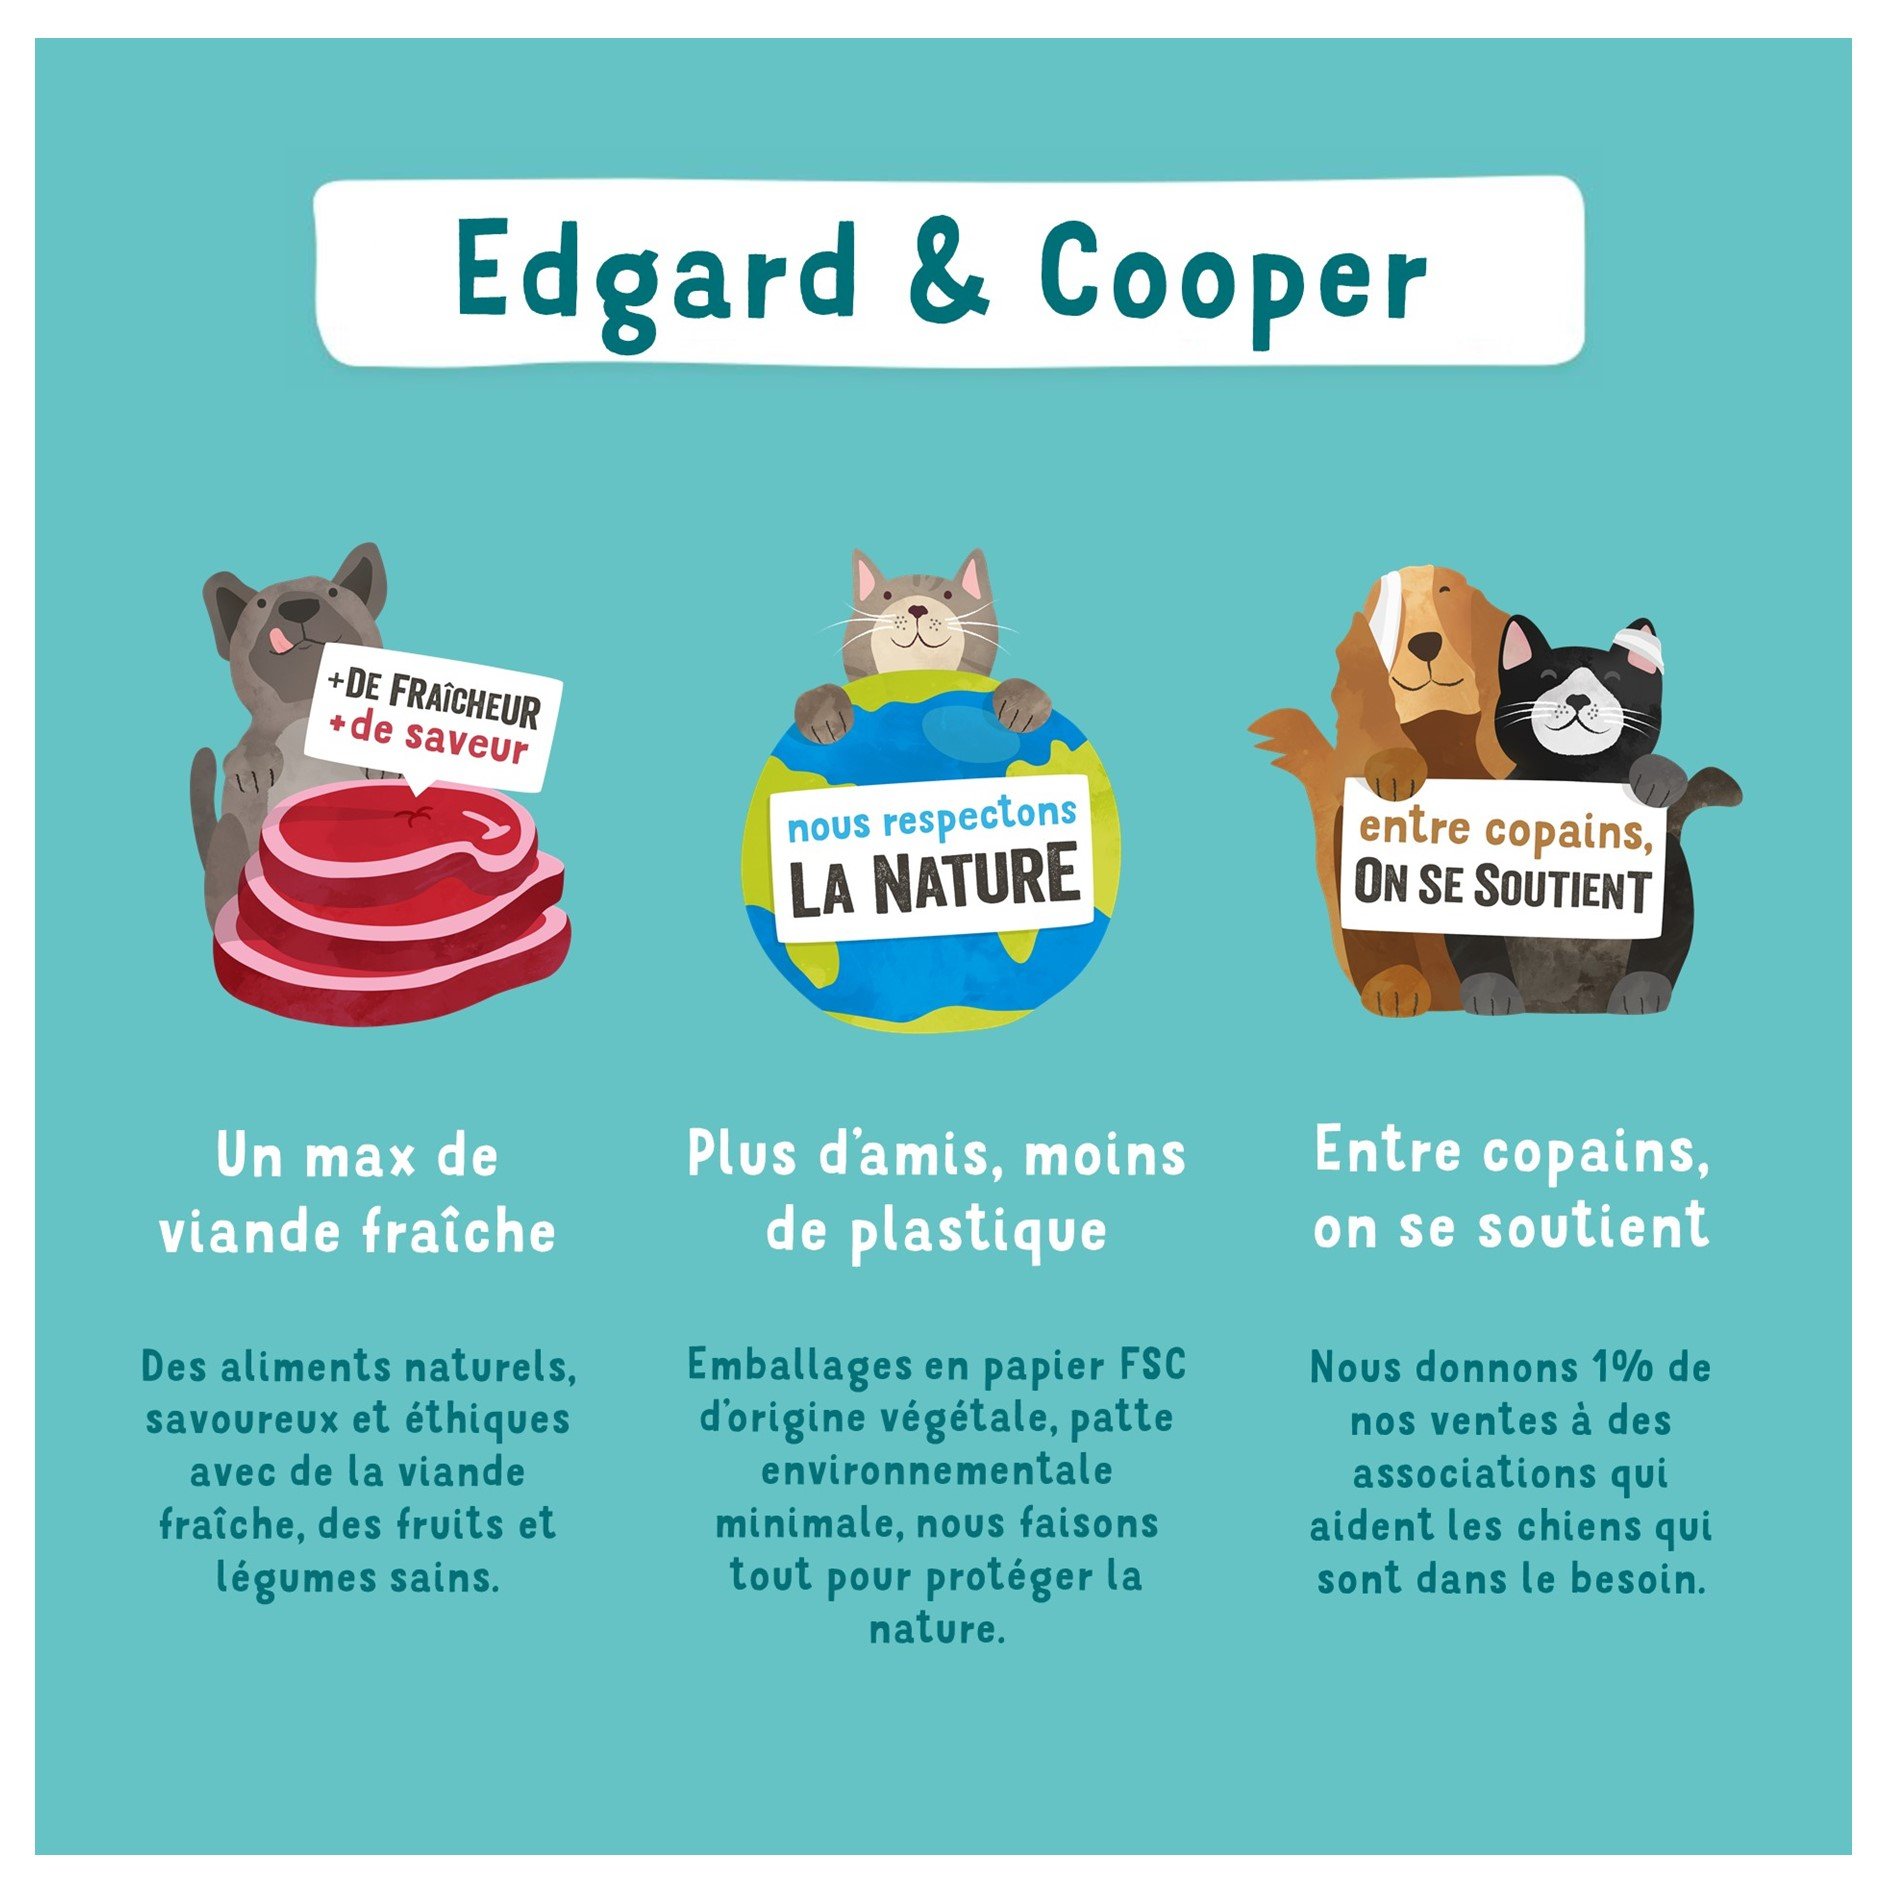 Edgard & Cooper Morceaux en Sauce Dinde et Poulet frais Sans Céréales pour Chat Adulte